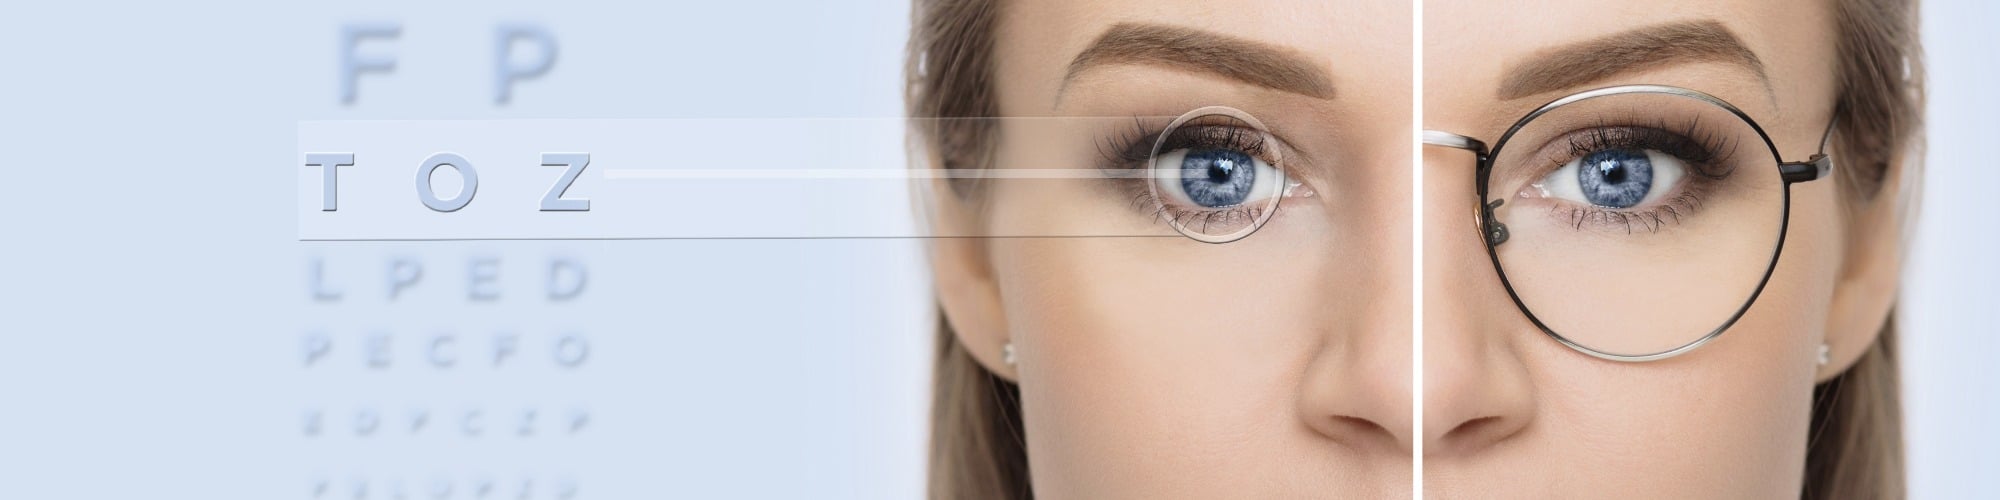 Зрение 2 операция. Глаз с бровью. Очки после лазерной коррекции. Плюсы и минусы линз для зрения. Косоглазие и близорукость.